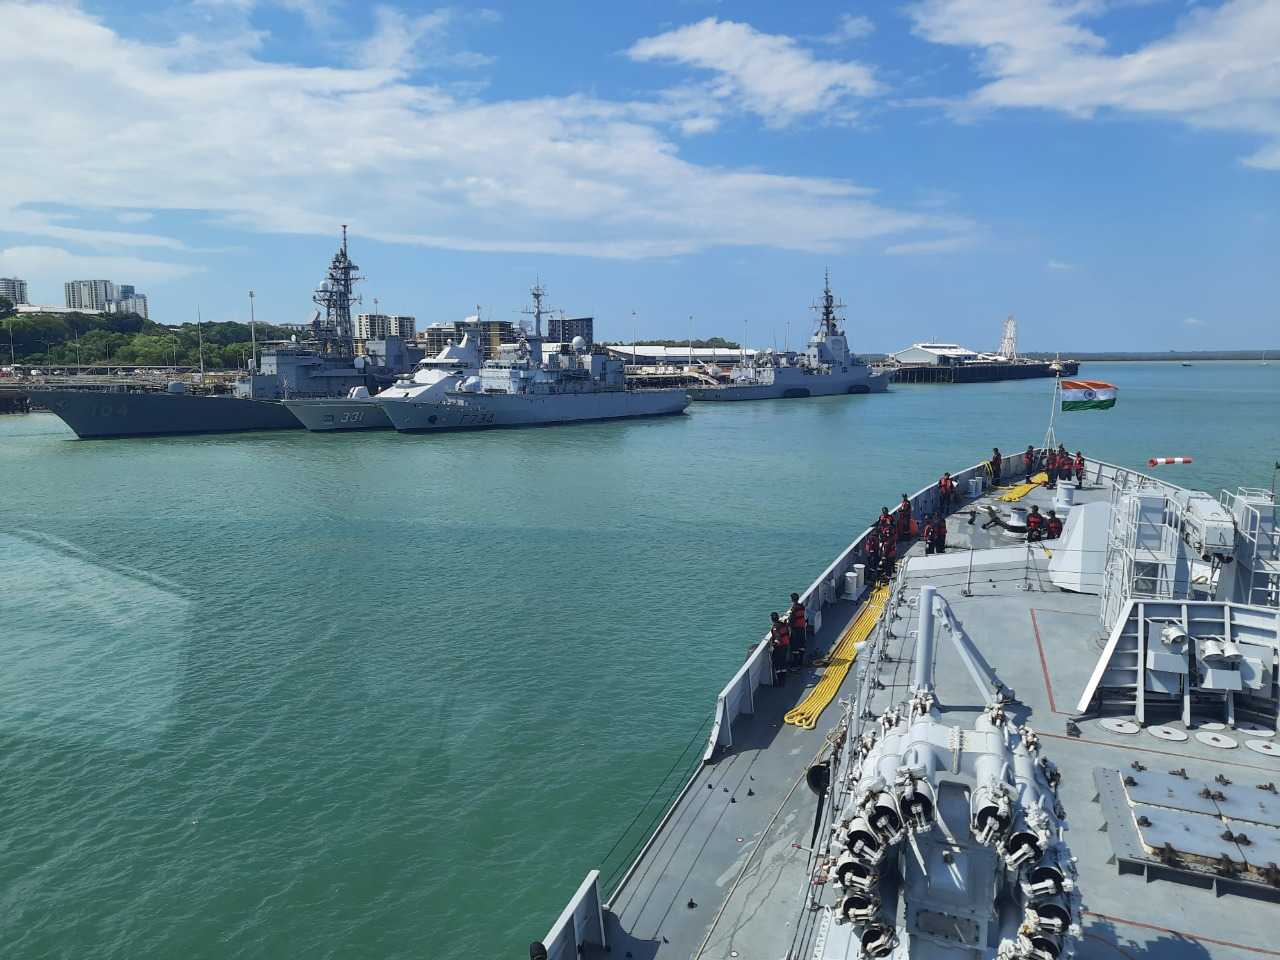 आयएनएस सातपुडा  आणि P8 I सागरी गस्त  विमाने बहुराष्ट्रीय नौदल सराव  काकाडूमध्ये सहभागी होण्यासाठी ऑस्ट्रेलियातील डार्विन येथे पोहोचली